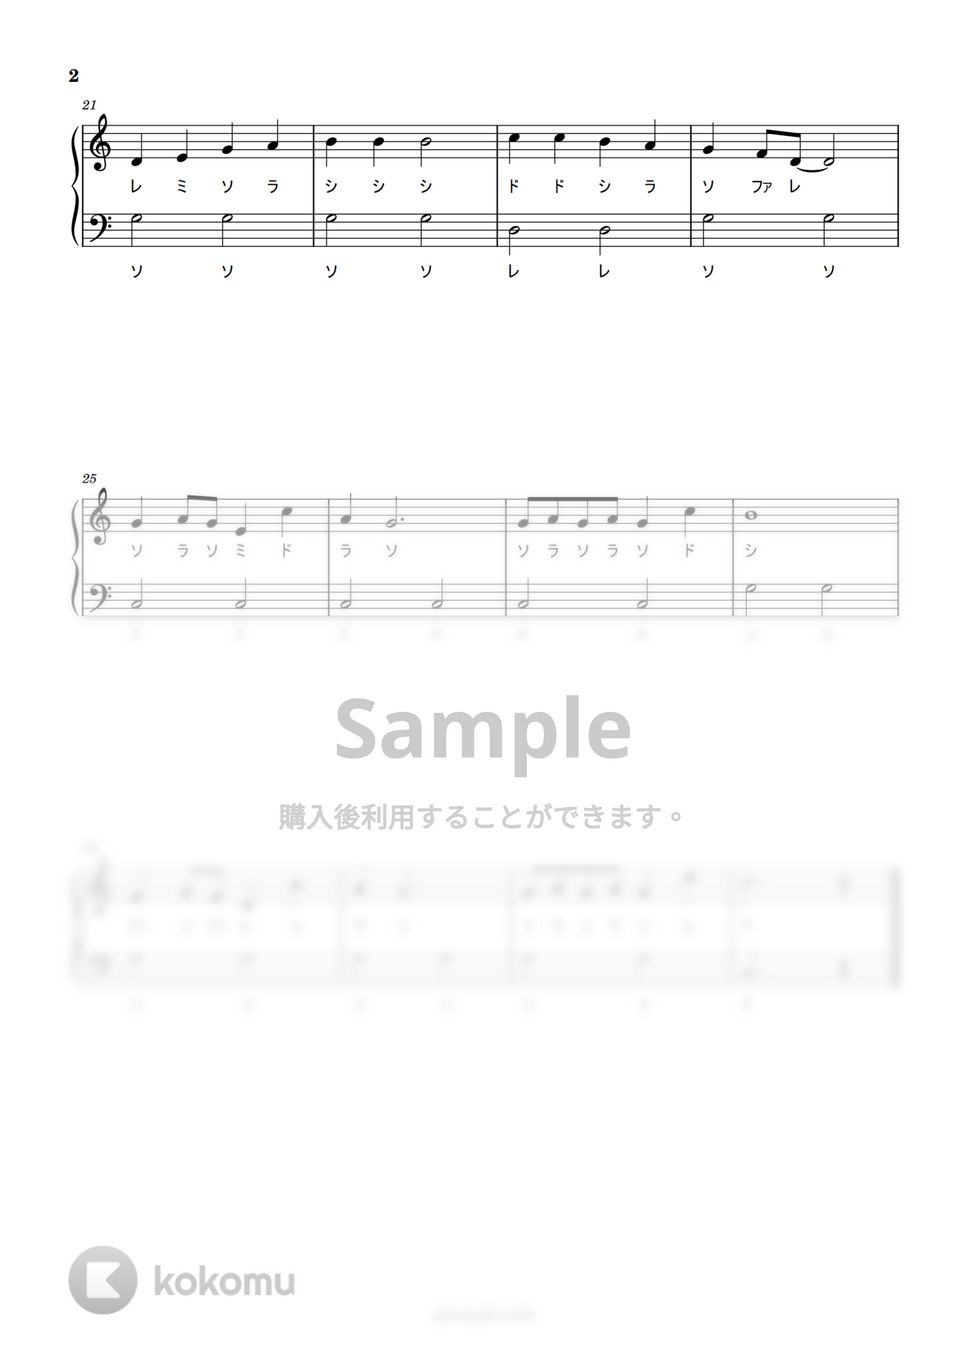 赤鼻のトナカイ (ドレミ付き簡単楽譜) by ピアノ塾